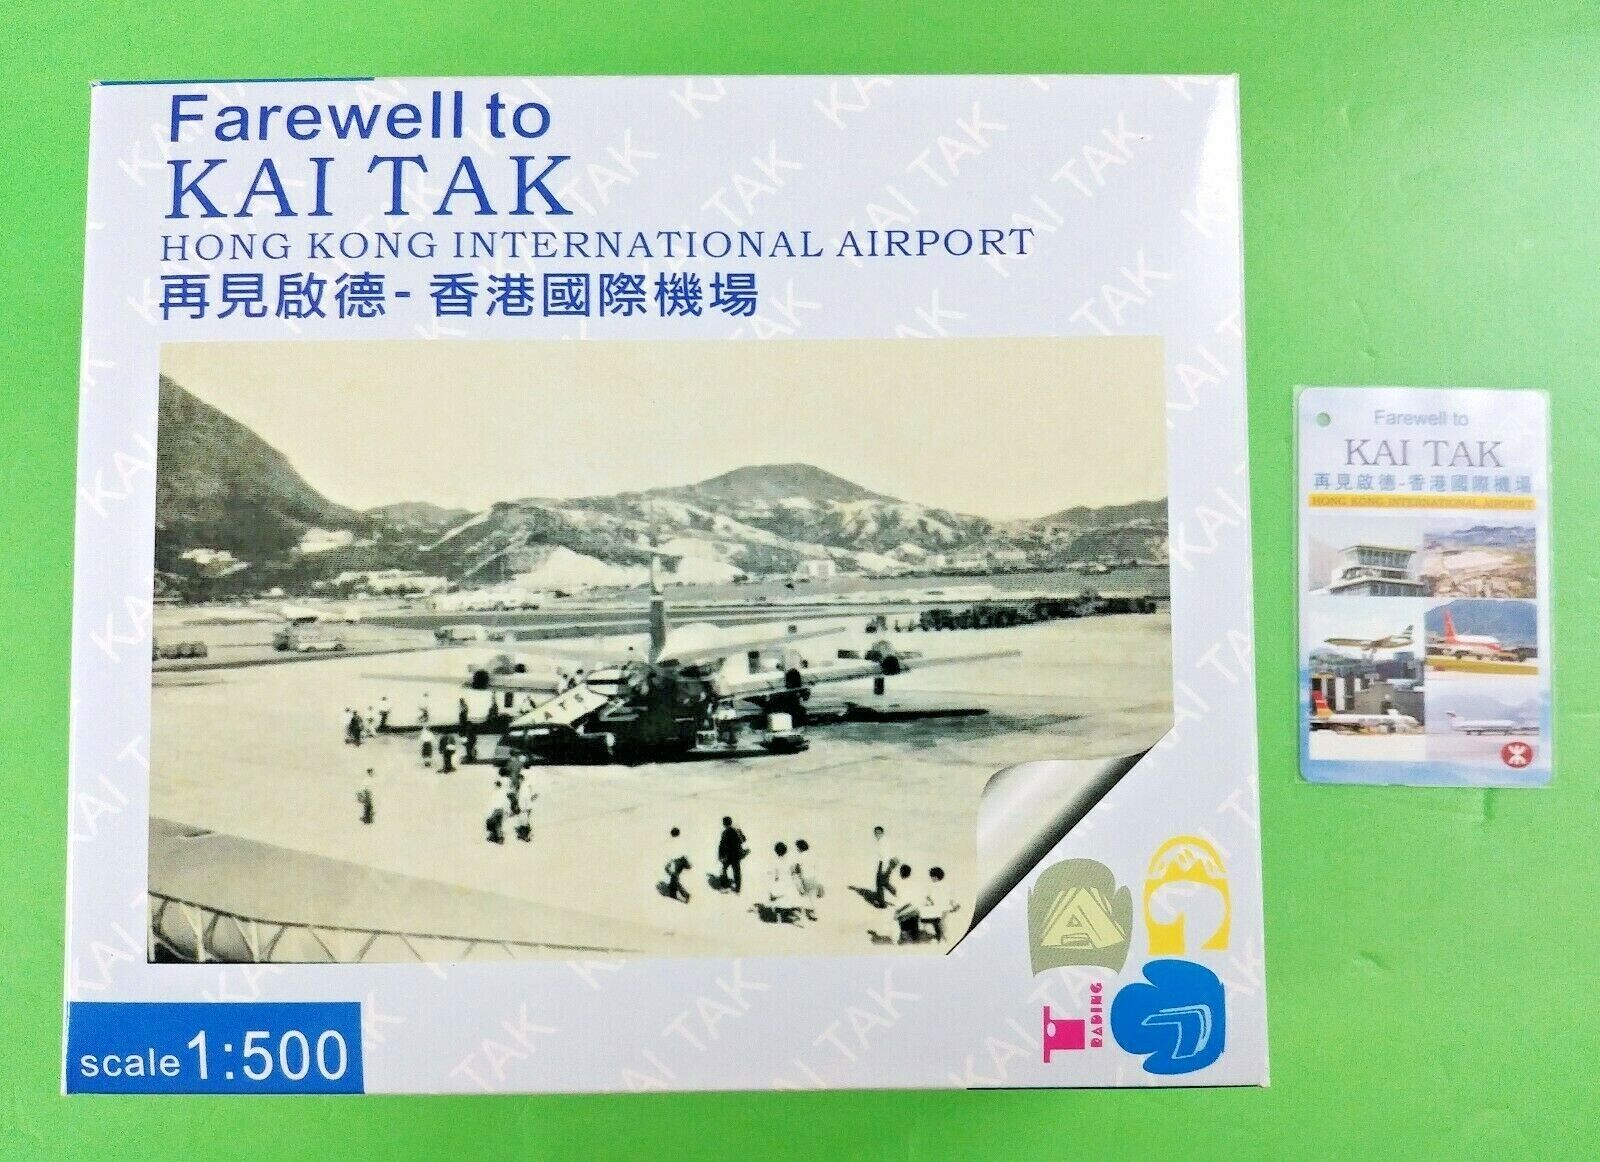 RARE MTR Ticket Farewell to KAI TAK + Limited 1:500 ORBIS DC-10 Model Set